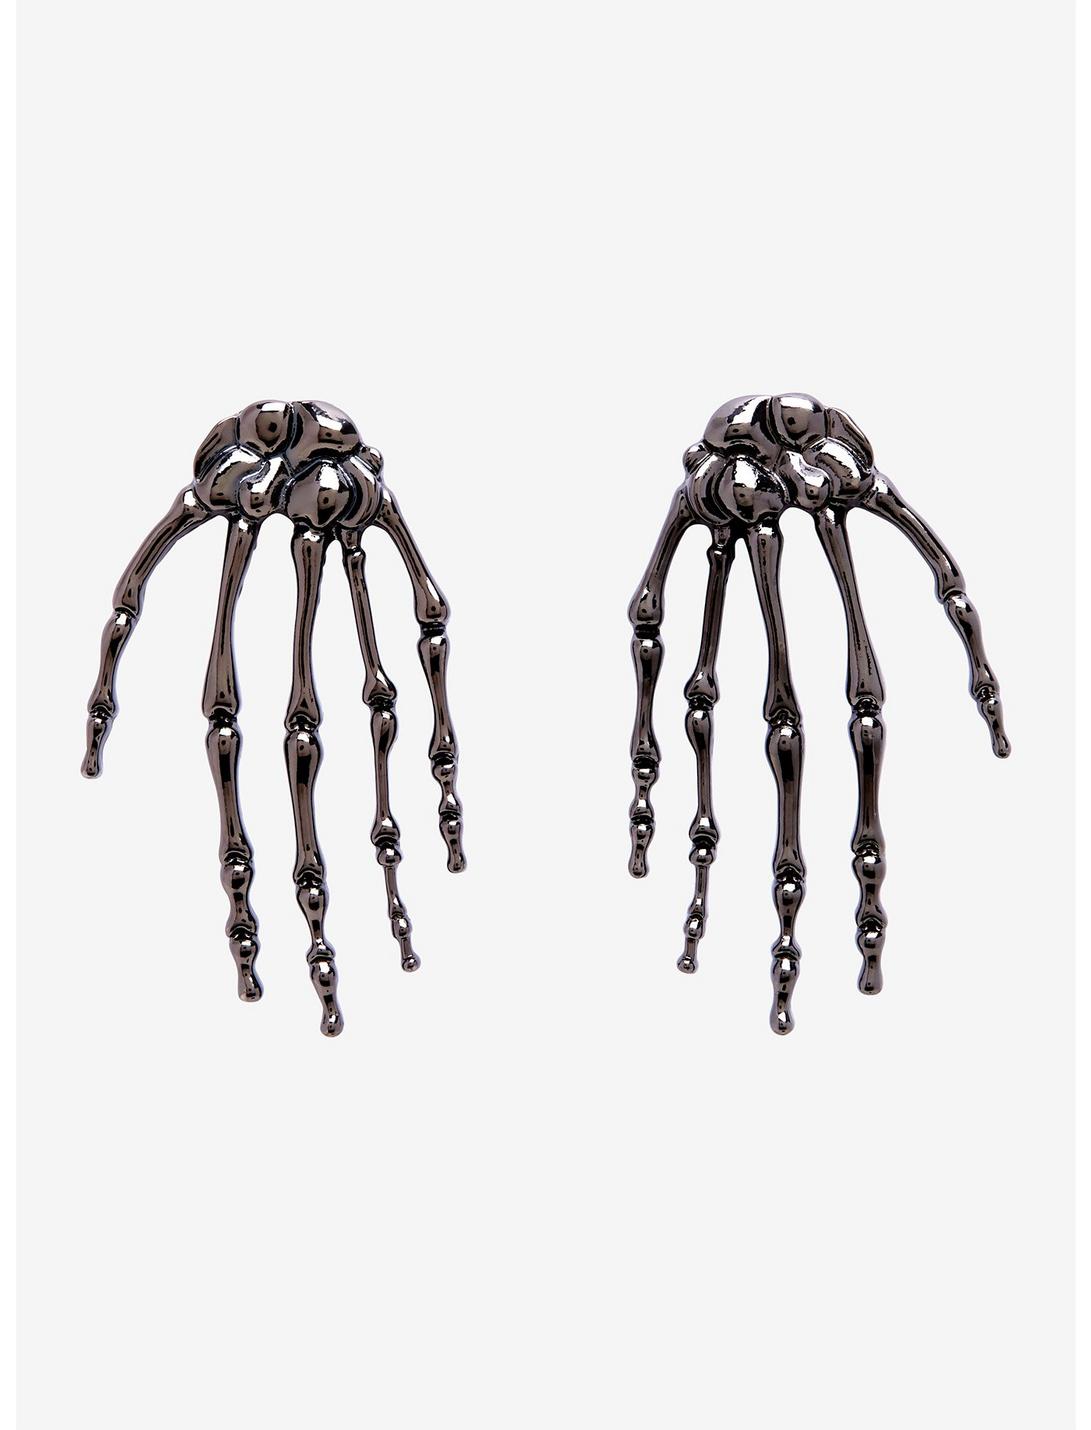 Blackheart Skeleton Hands Earrings, , hi-res